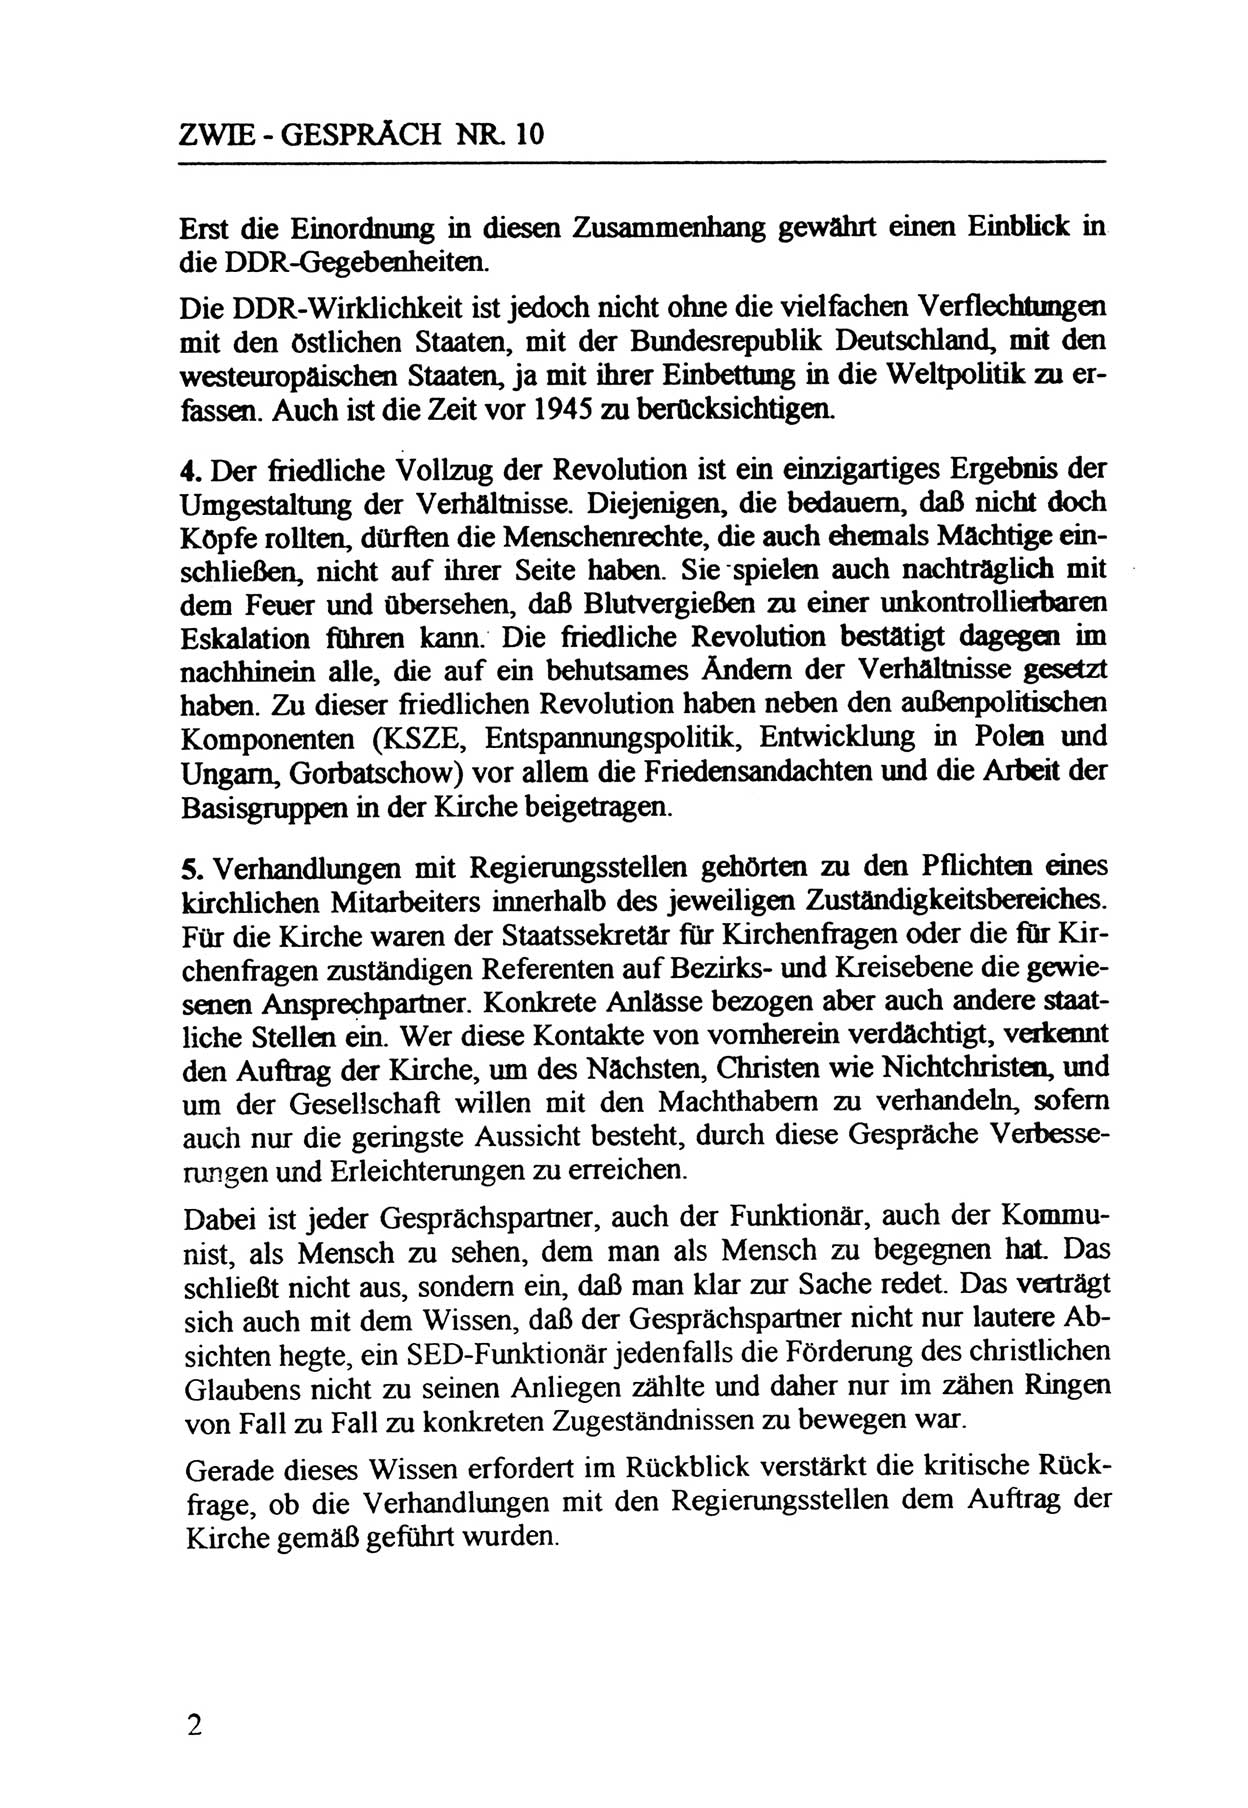 Zwie-Gespräch, Beiträge zur Aufarbeitung der Staatssicherheits-Vergangenheit [Deutsche Demokratische Republik (DDR)], Ausgabe Nr. 10, Berlin 1992, Seite 2 (Zwie-Gespr. Ausg. 10 1992, S. 2)